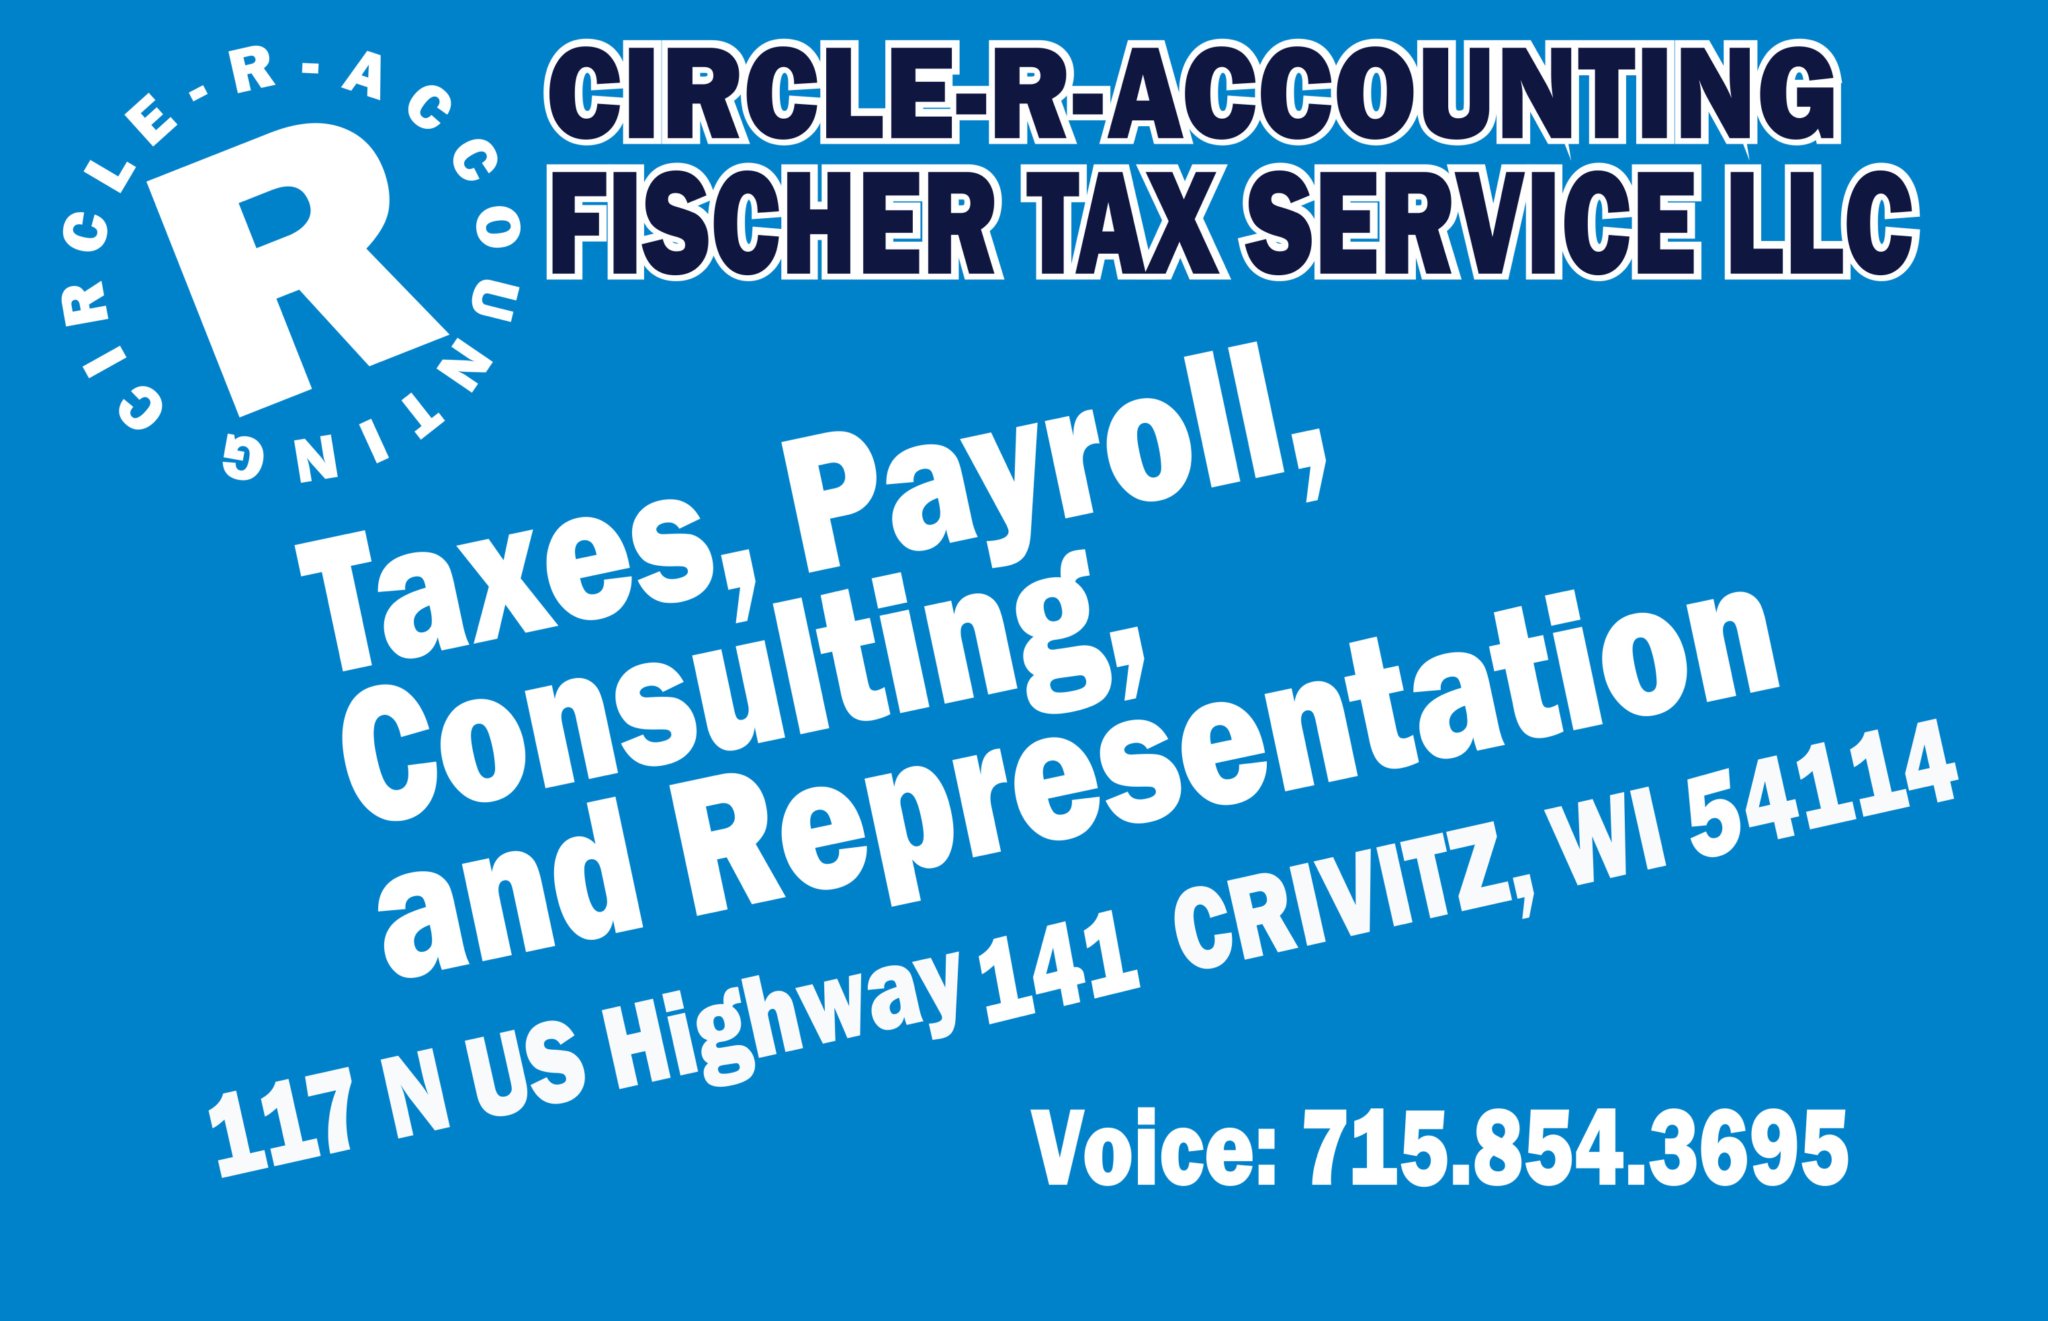 Fischer Tax & Financial Services 117 N U.S. Hwy 141, Crivitz Wisconsin 54114